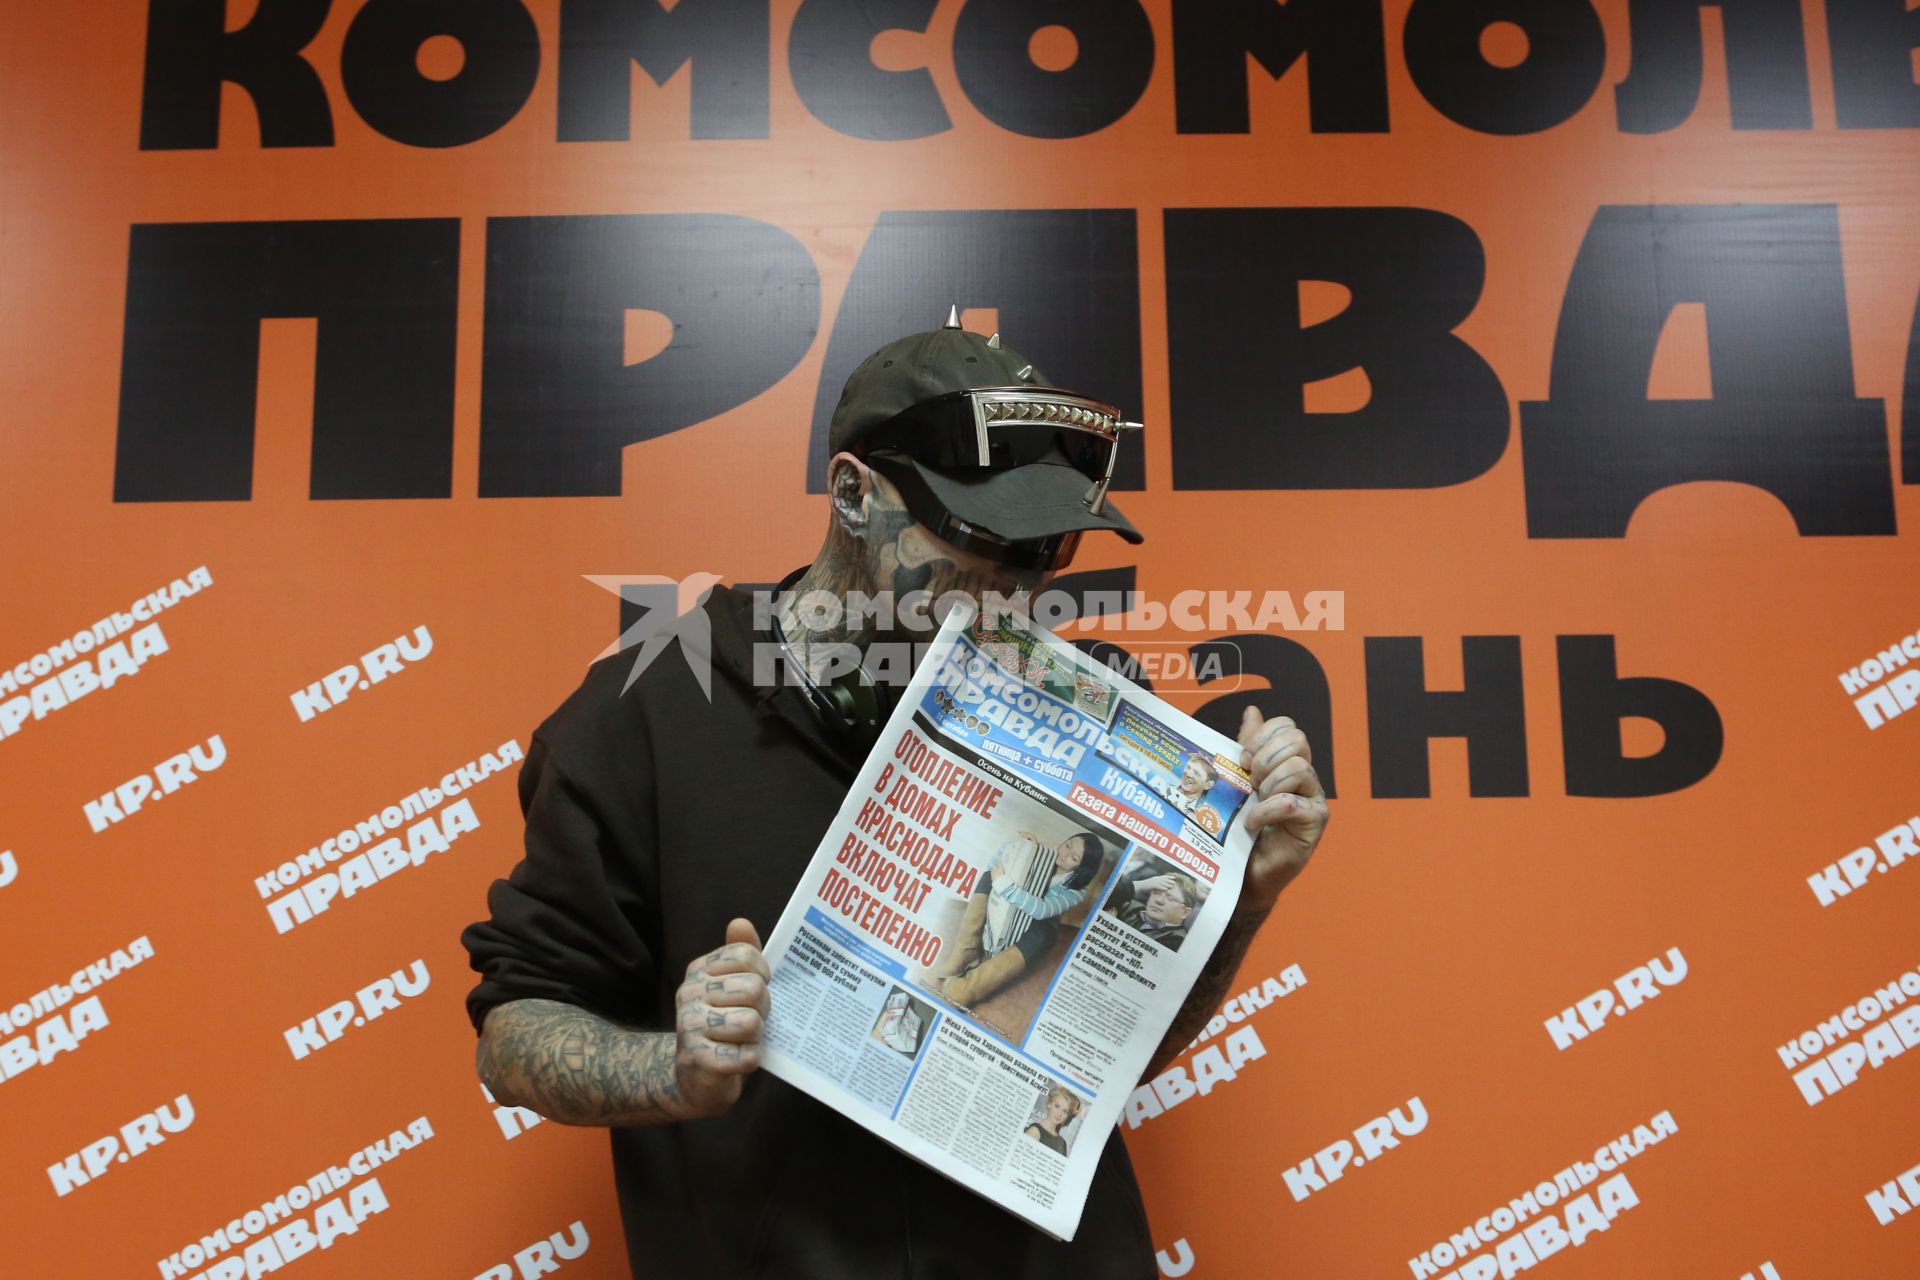 Канадская модель и музыкант, чье тело покрыто татуировками в виде скелета человека, Зомби бой (настоящее имя Рик Дженест) кусает газету \"Комсомольская правда\" в пресс-центре краснодарской редакции.